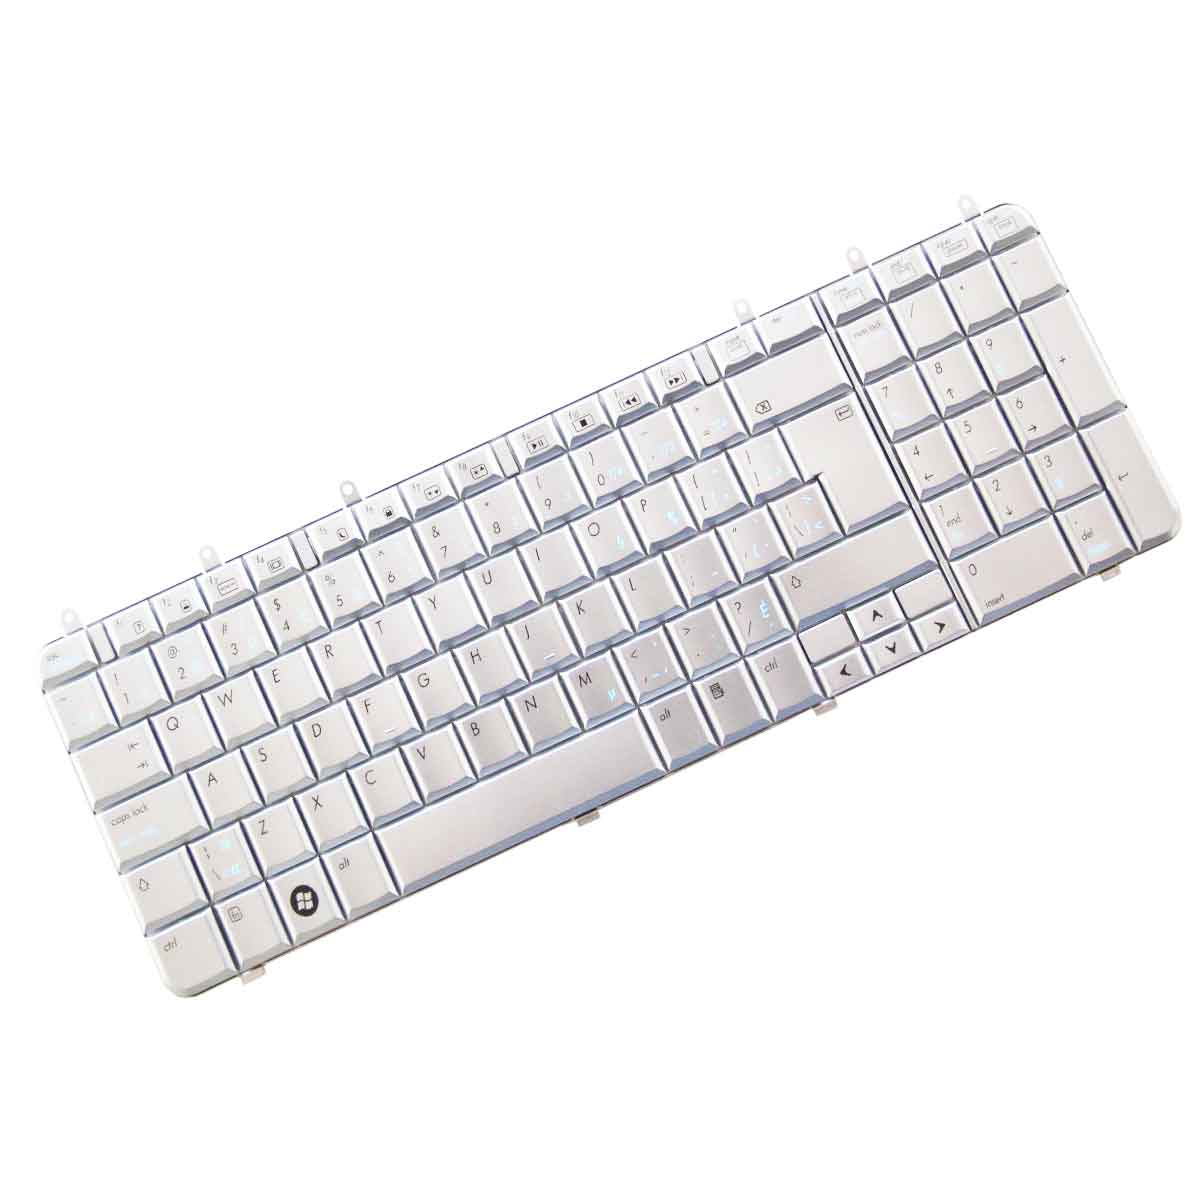 کیبورد لپ تاپ اچ پی Keyboard Laptop HP DV7-1000 DV7-1200